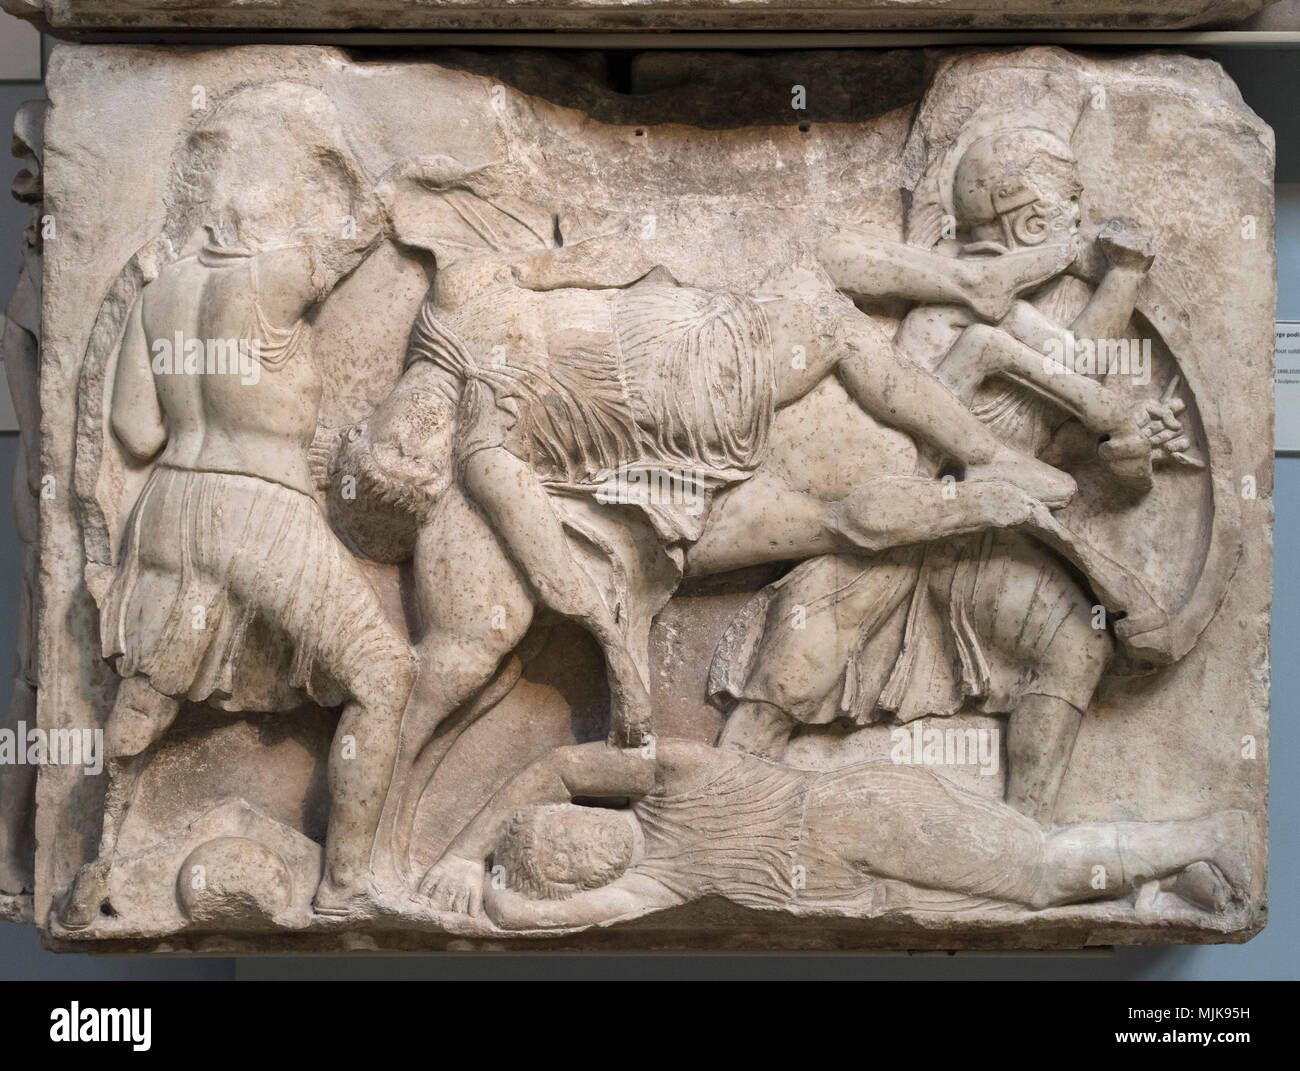 Londra. In Inghilterra. British Museum, nereide monumento, fregio (dettaglio), guerrieri in combattimento, l'uomo morto cadendo da un allevamento di cavalli, da Xanthos, Turchia, ca Foto Stock